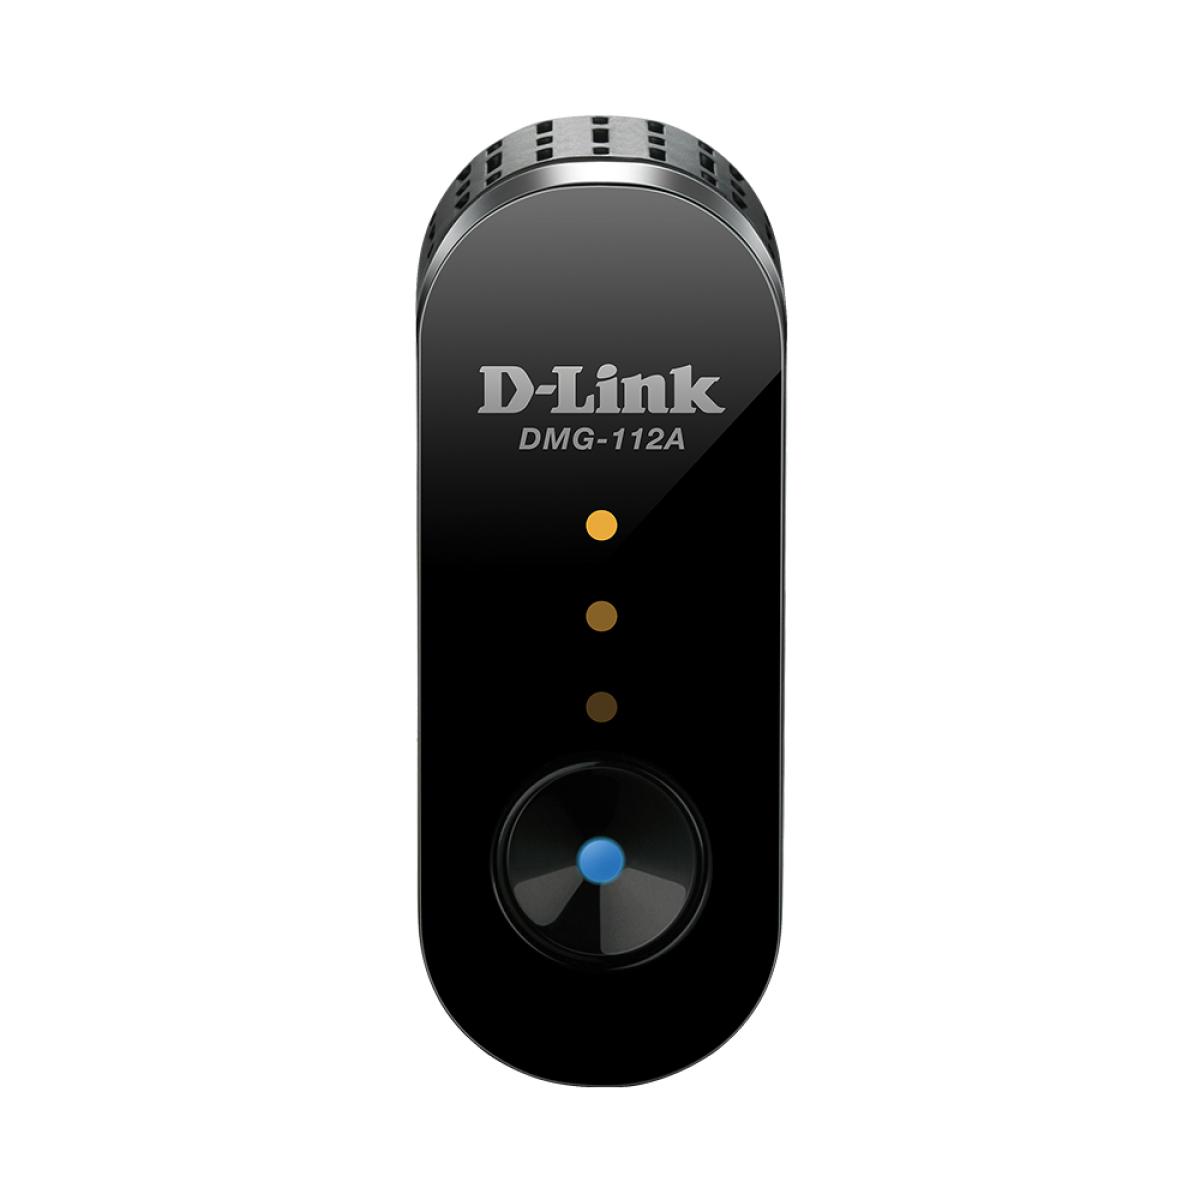 D-Link DMG-112A Wireless N300 Range Extender